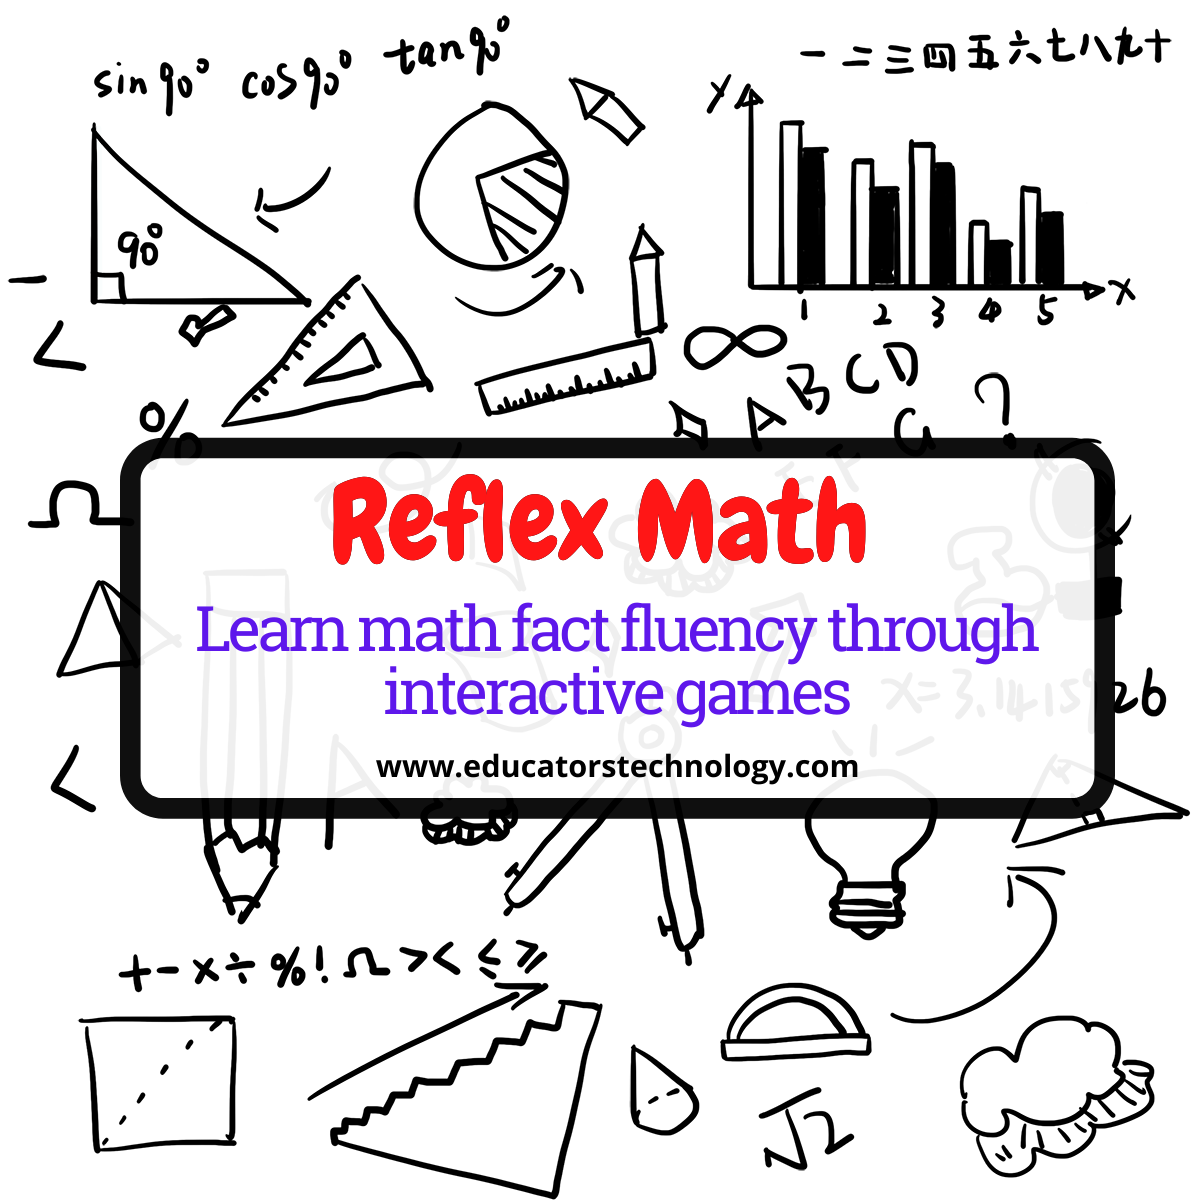 Reflex Math review for teachers